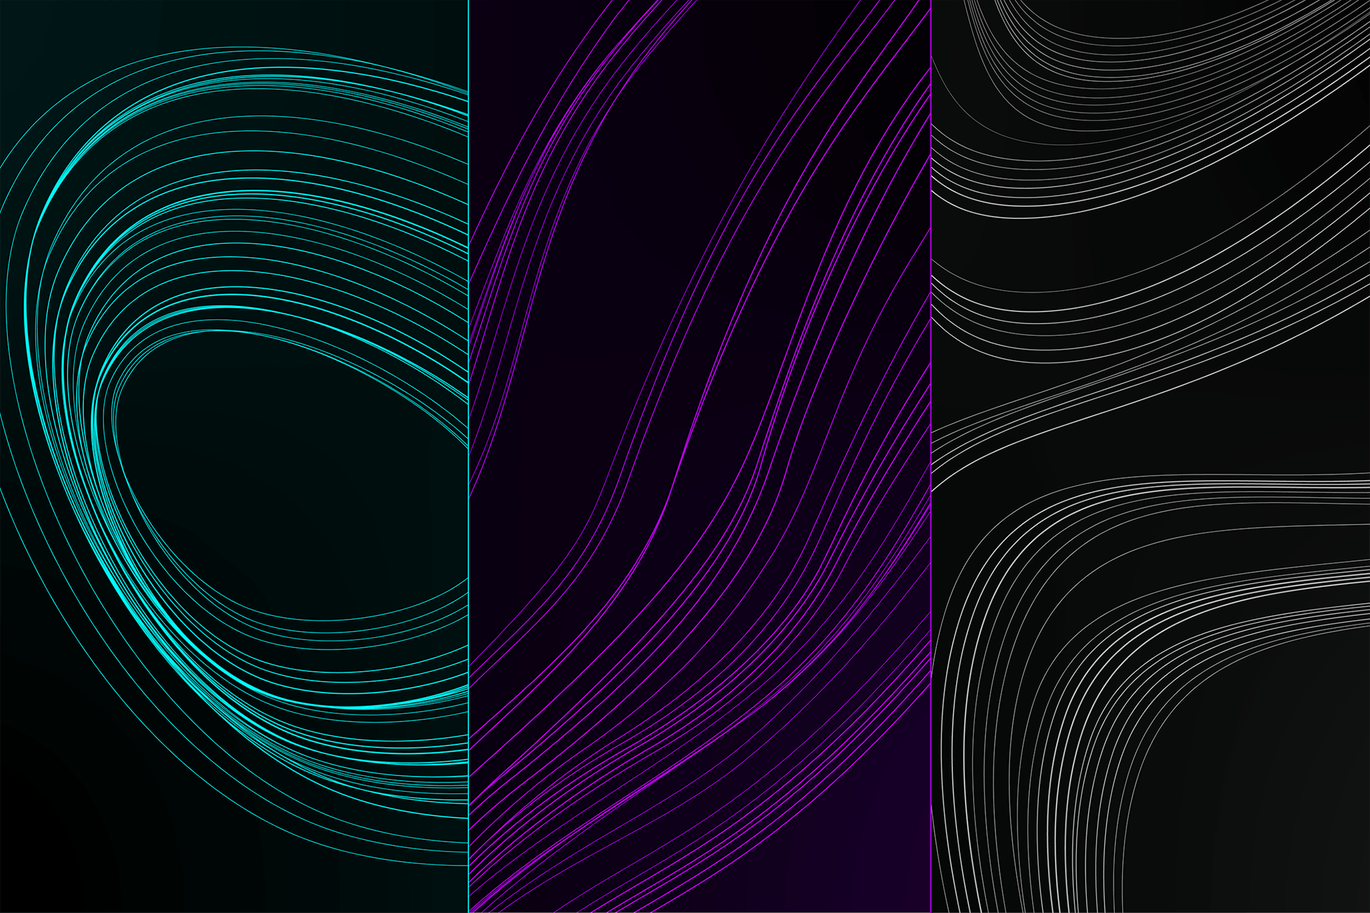 3种抽象线条几何图形高清背景图素材 Abstract Background Set插图3